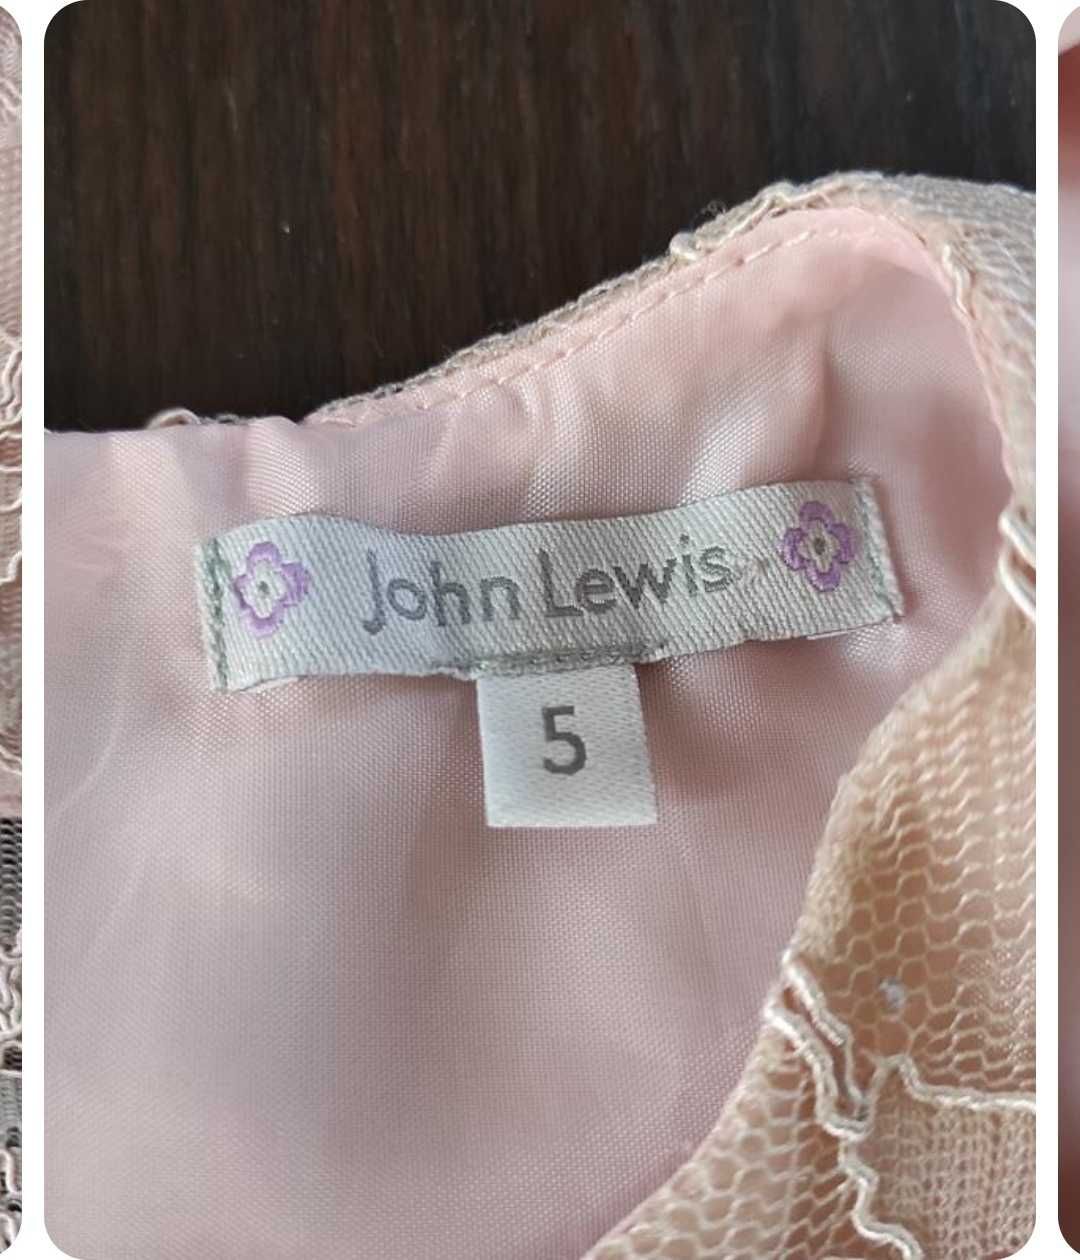 Нарядное платье John Lewis возраст 5 лет.